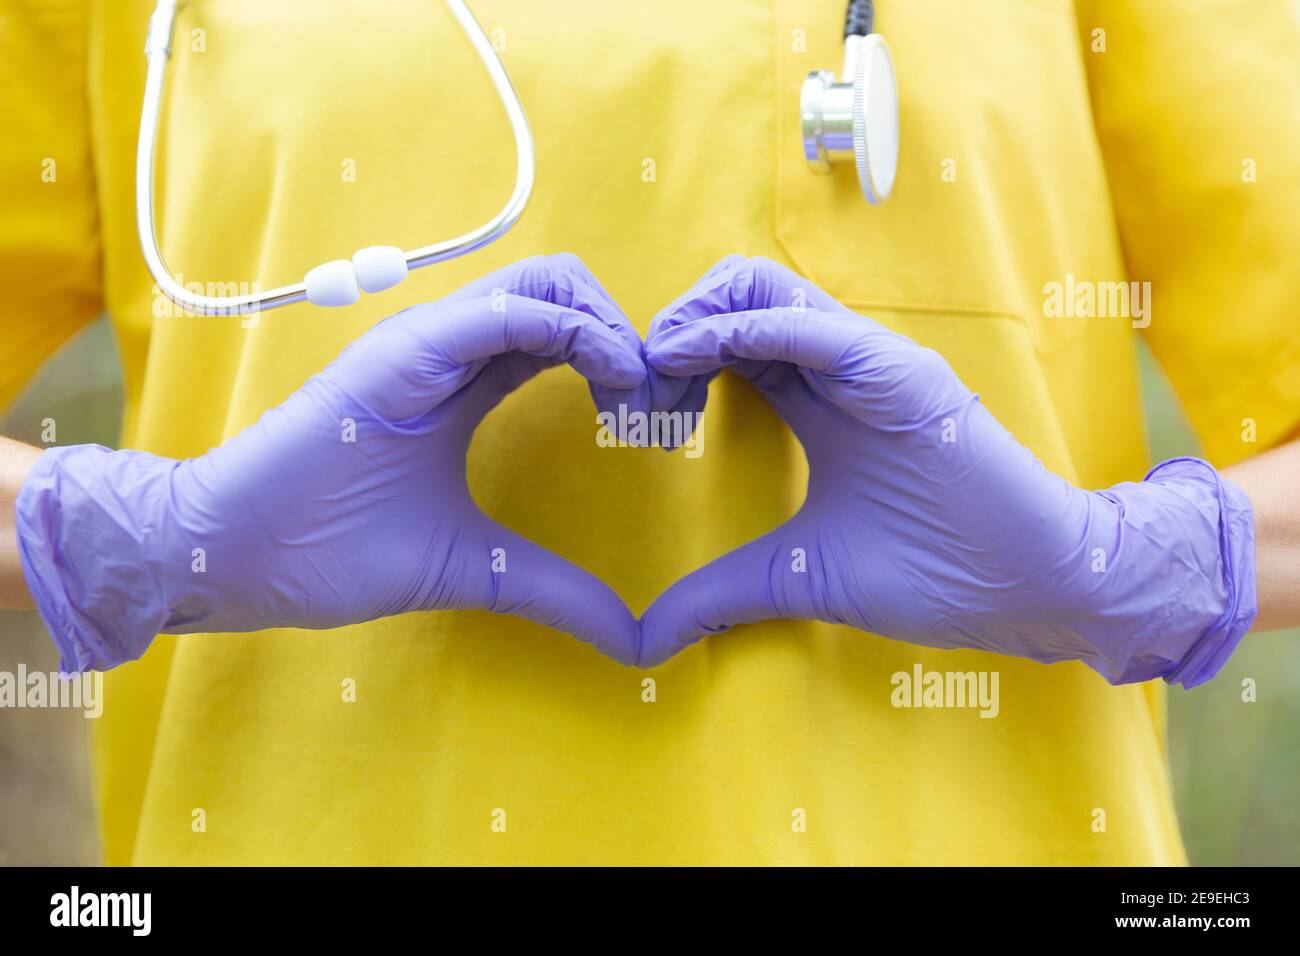 Approchez le personnel de santé méconnaissable avec un uniforme, des gants et un stéthoscope formant un cœur avec ses mains. Concept de soins de santé. Banque D'Images